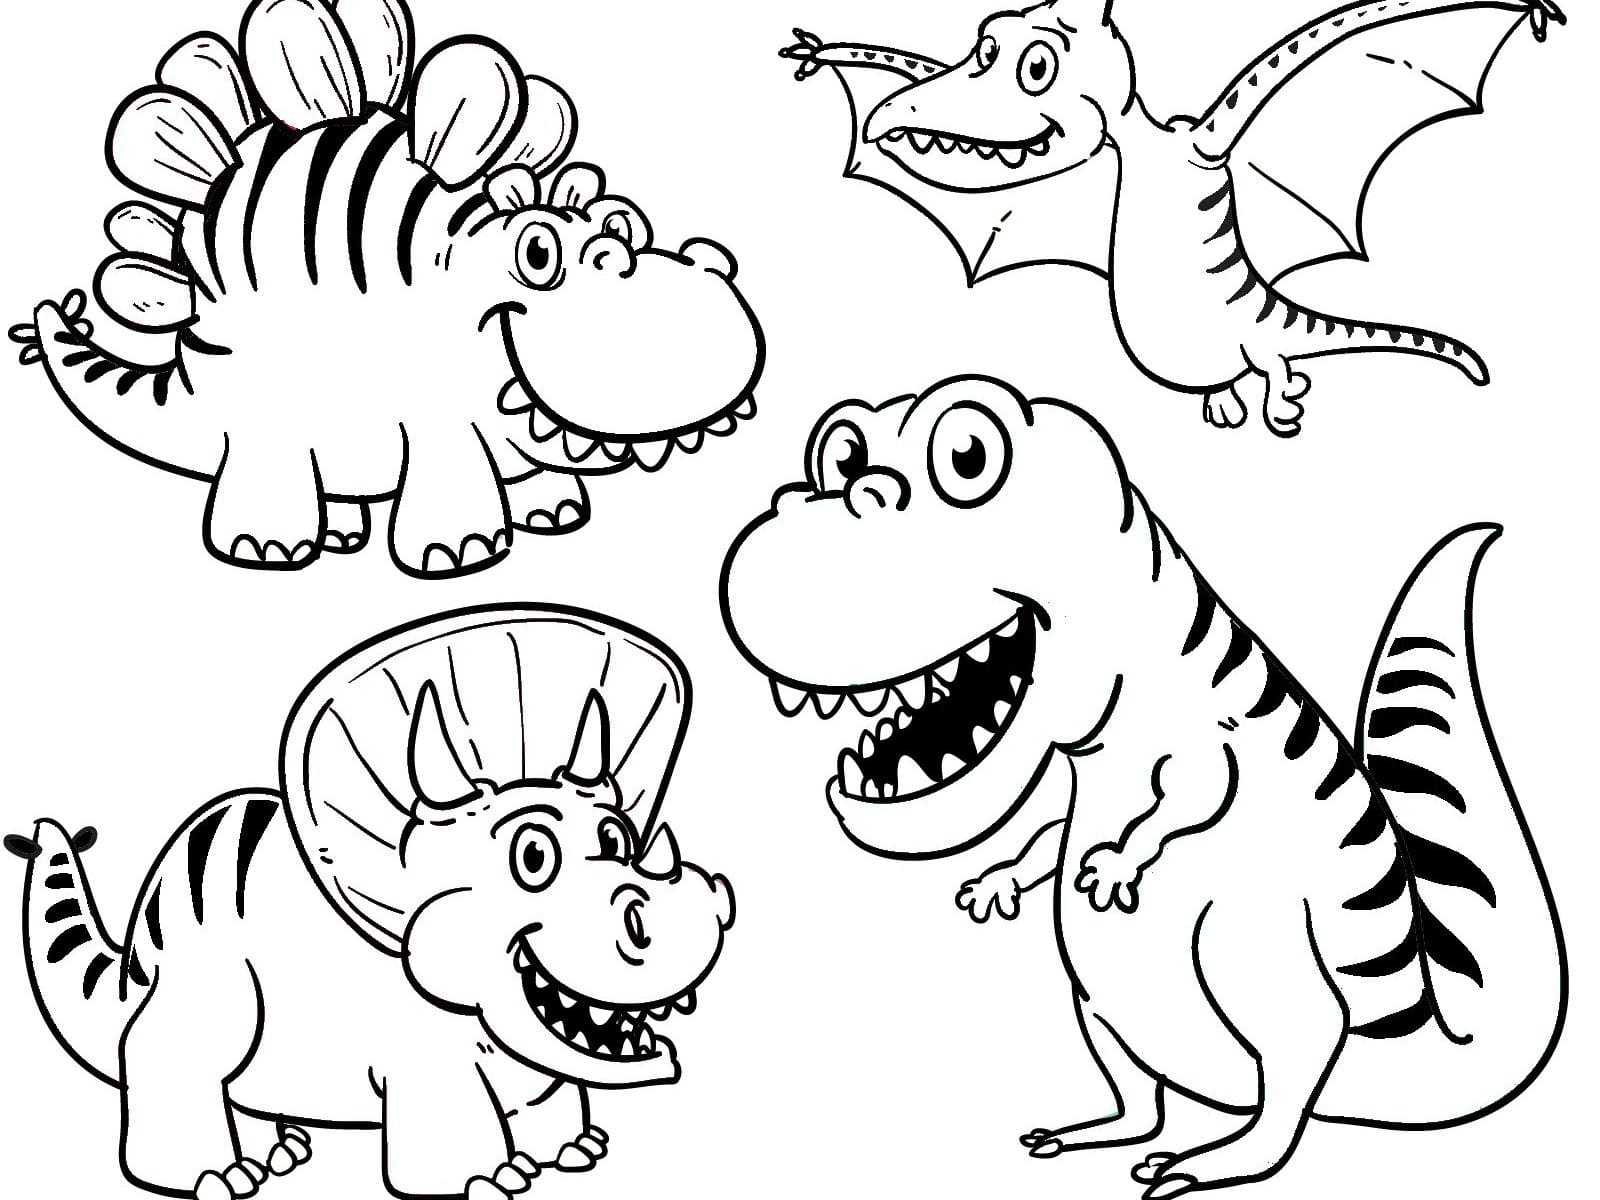 Раскраски динозавры для детей распечатать и скачать, картинки разукрашки динозавриков для мальчиков